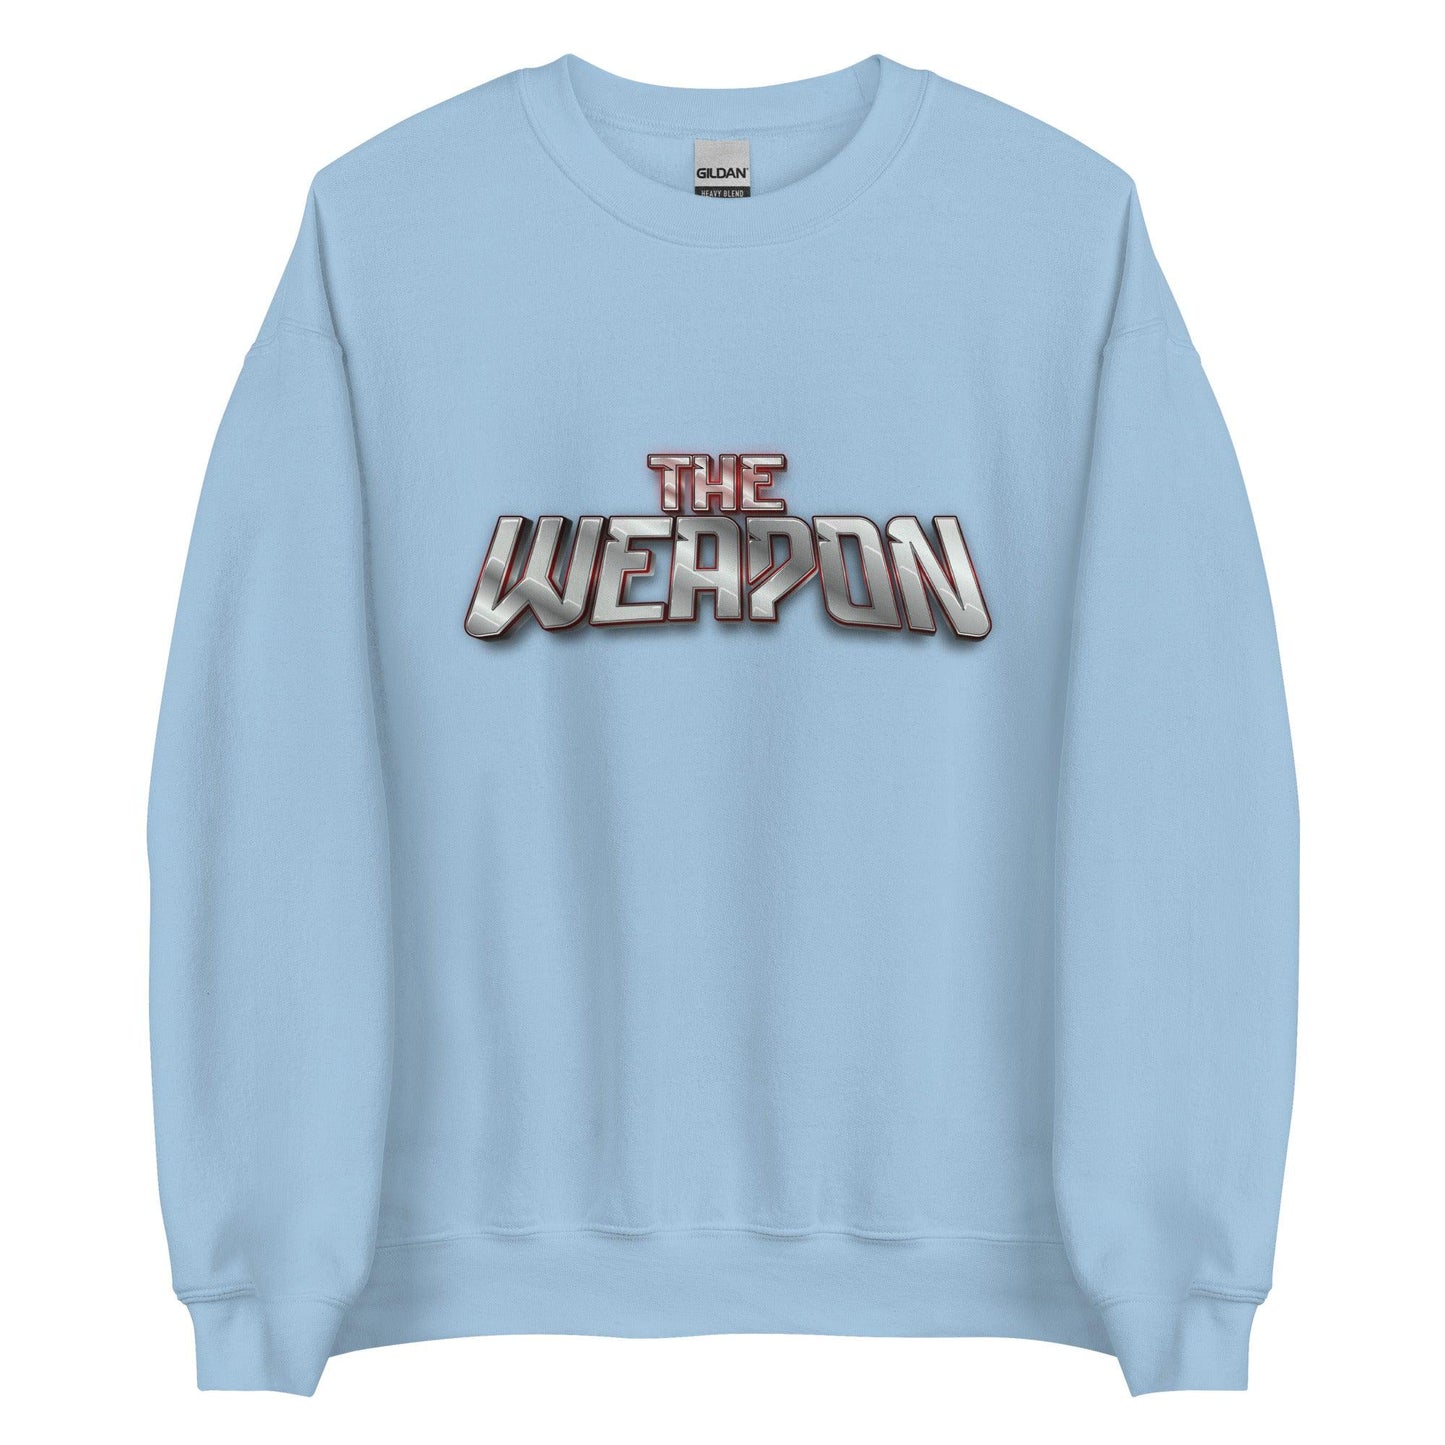 Aubrey Ward Jr. "The Weapon" Sweatshirt - Fan Arch